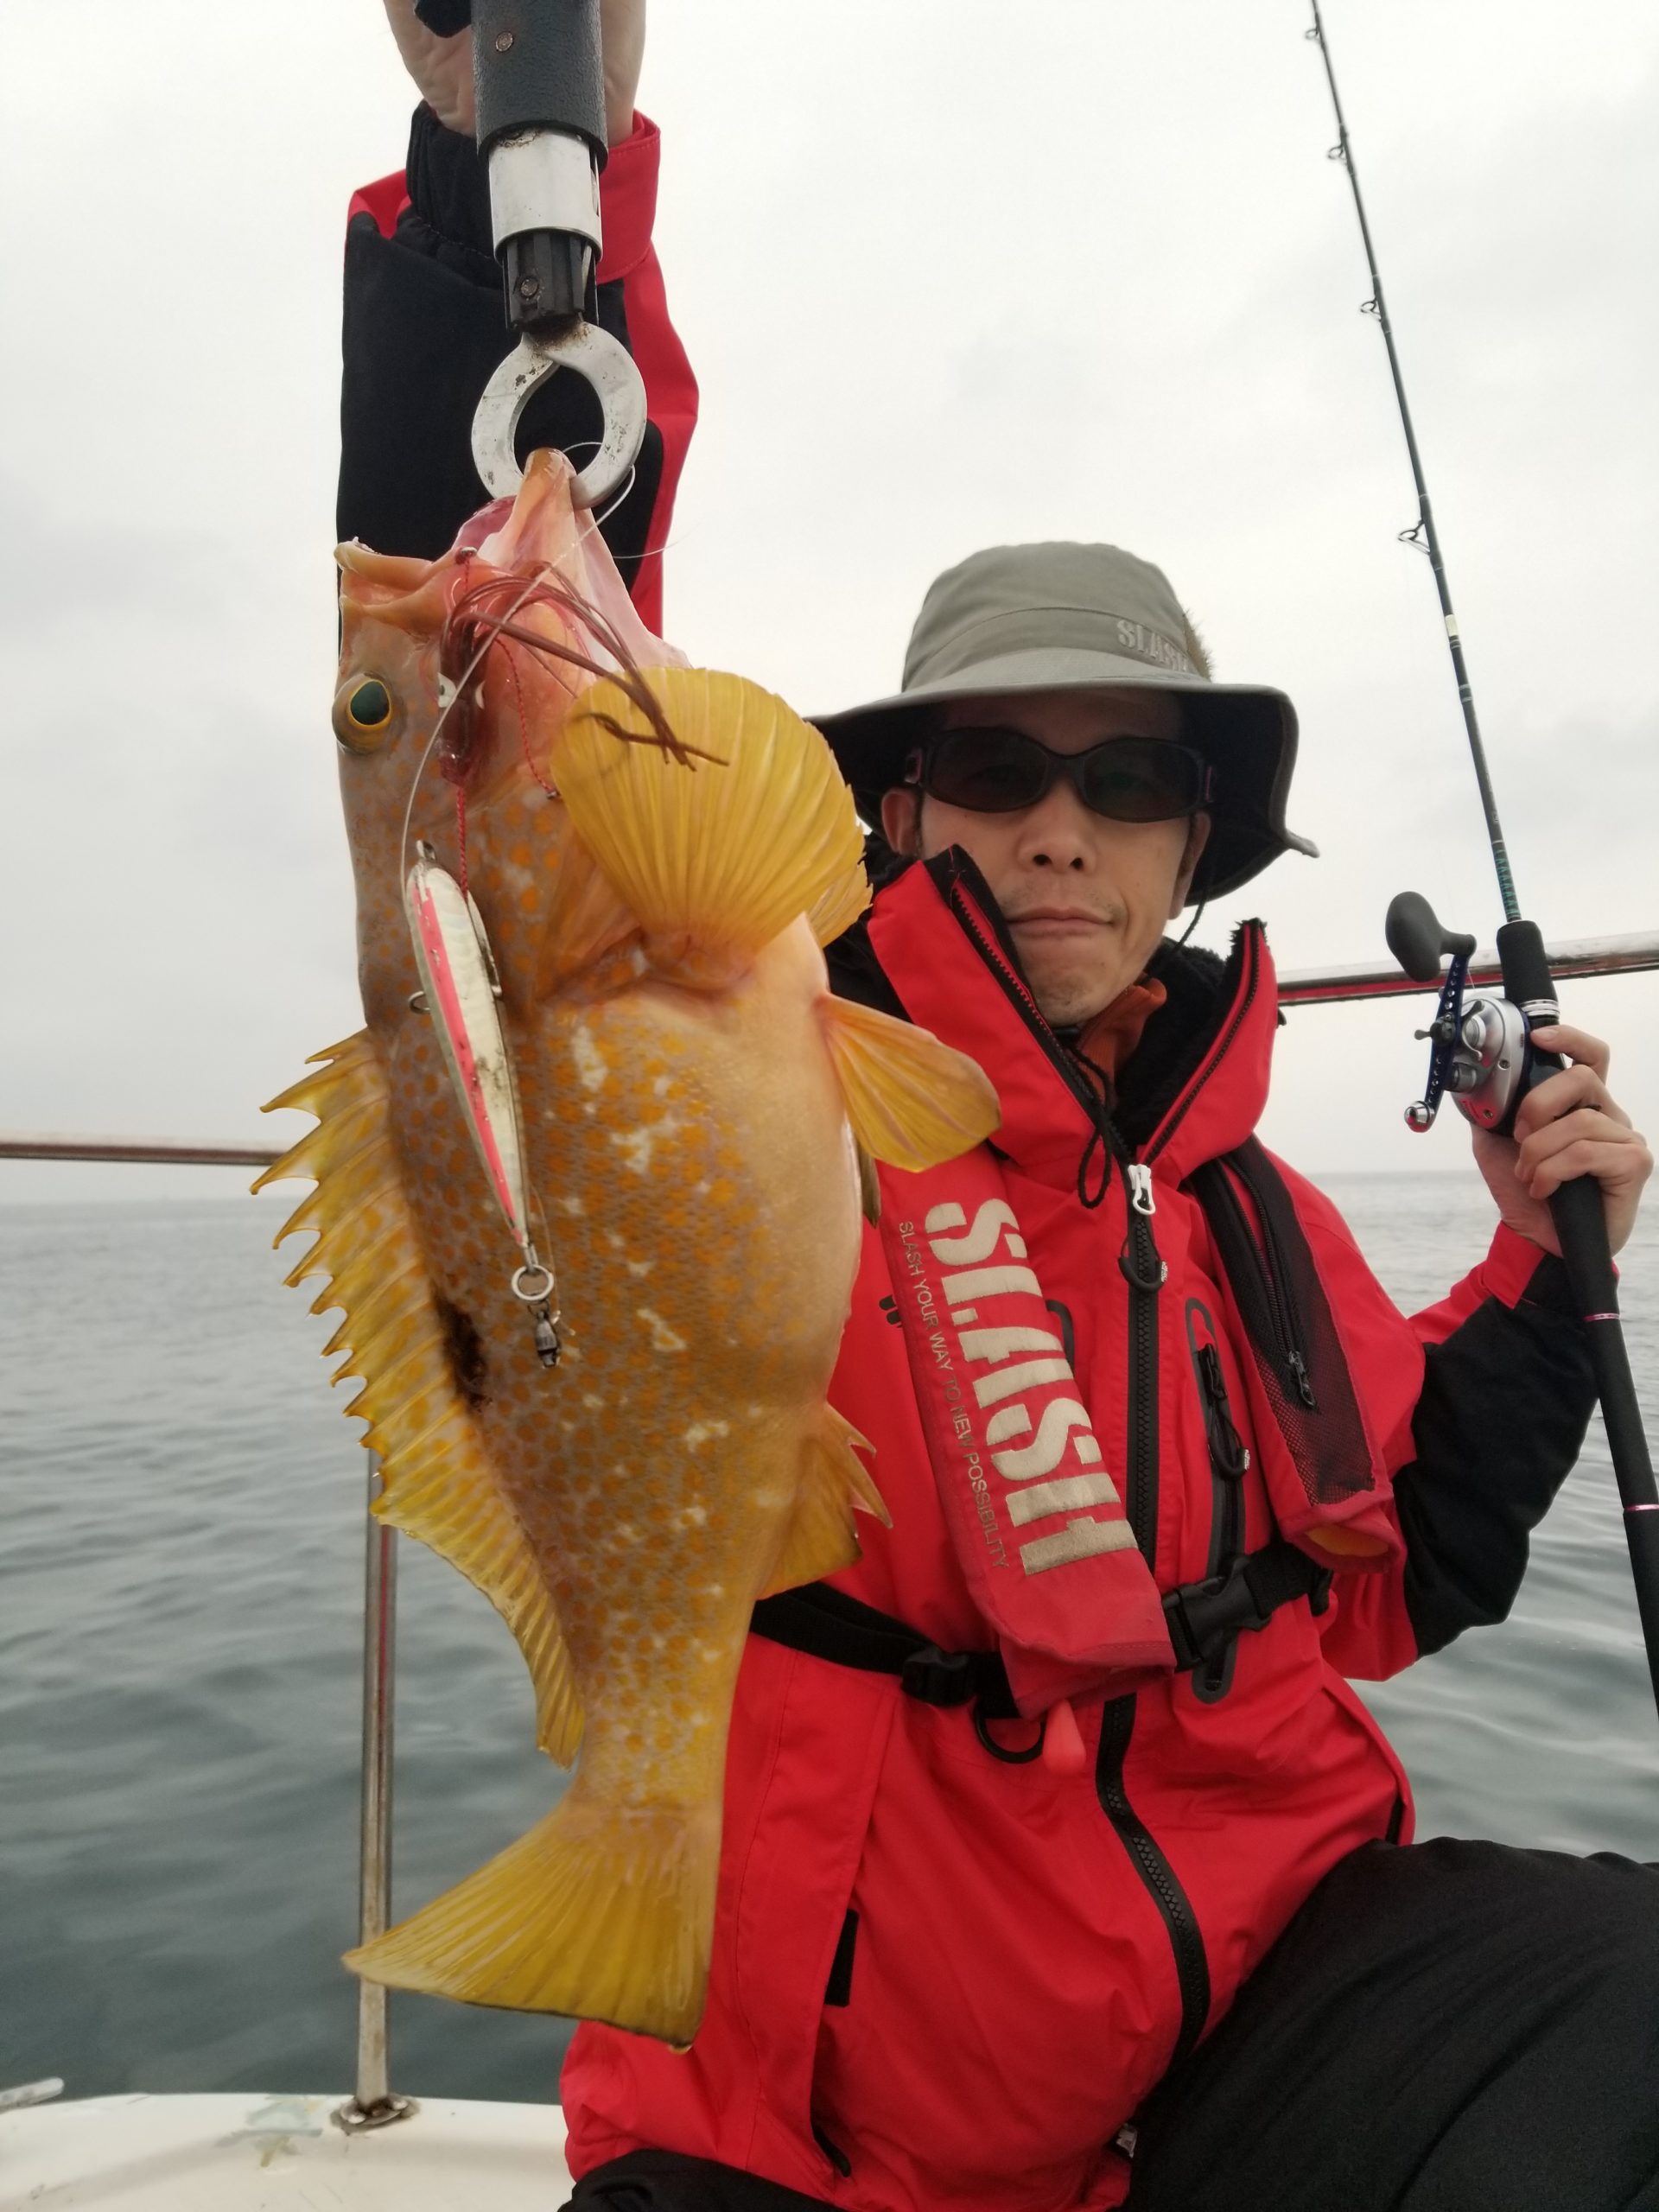 キジハタ アコウ 全国の釣り場情報を地図と釣れる魚から調べることができるサイト 全国釣り場 Com Part 10